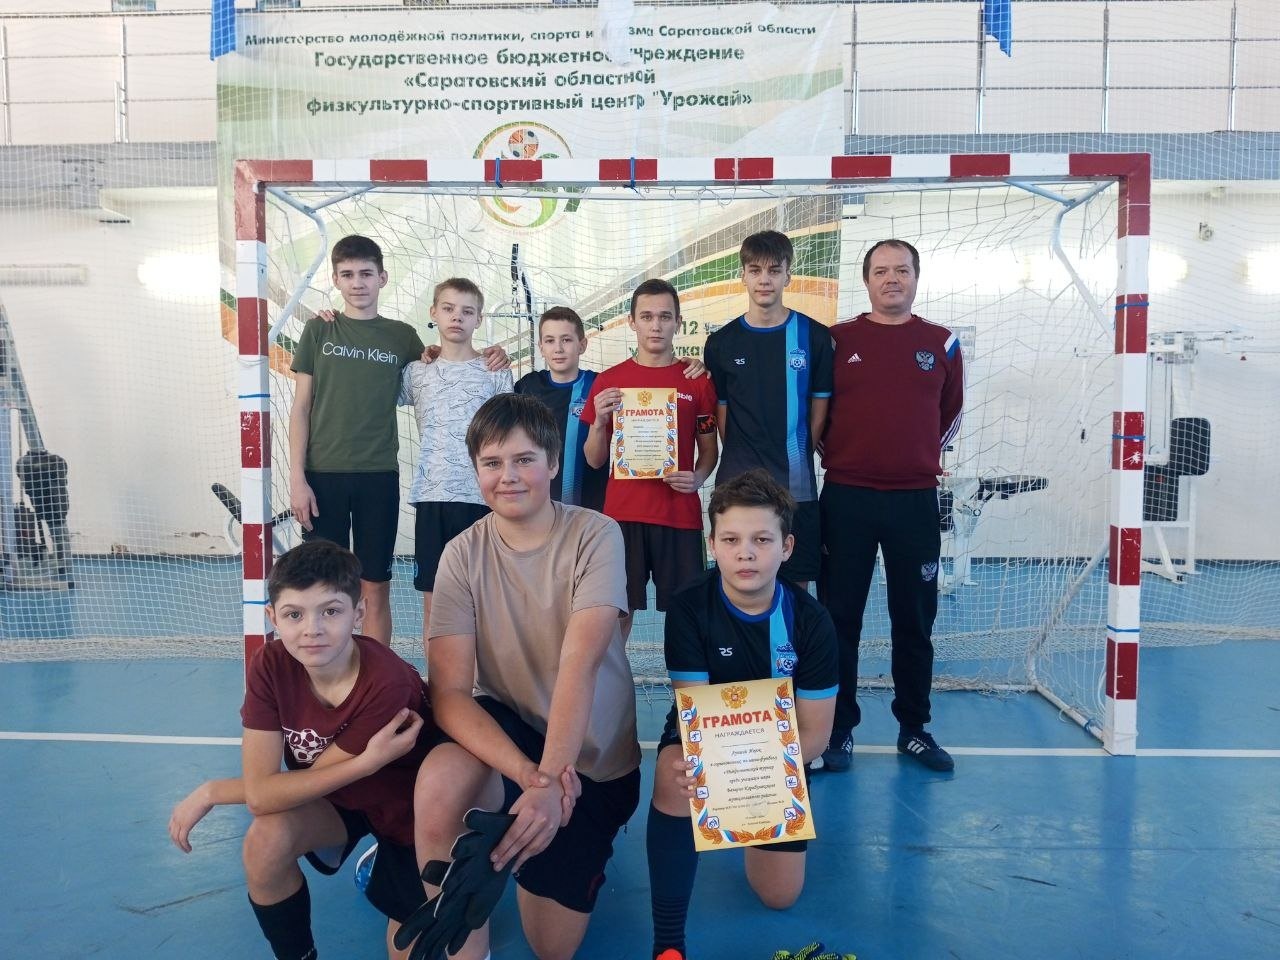 На базе спортивной школы состоялся Рождественский турнир по мини-футболу среди учащихся школ Базарно-Карабулакского муниципального района.